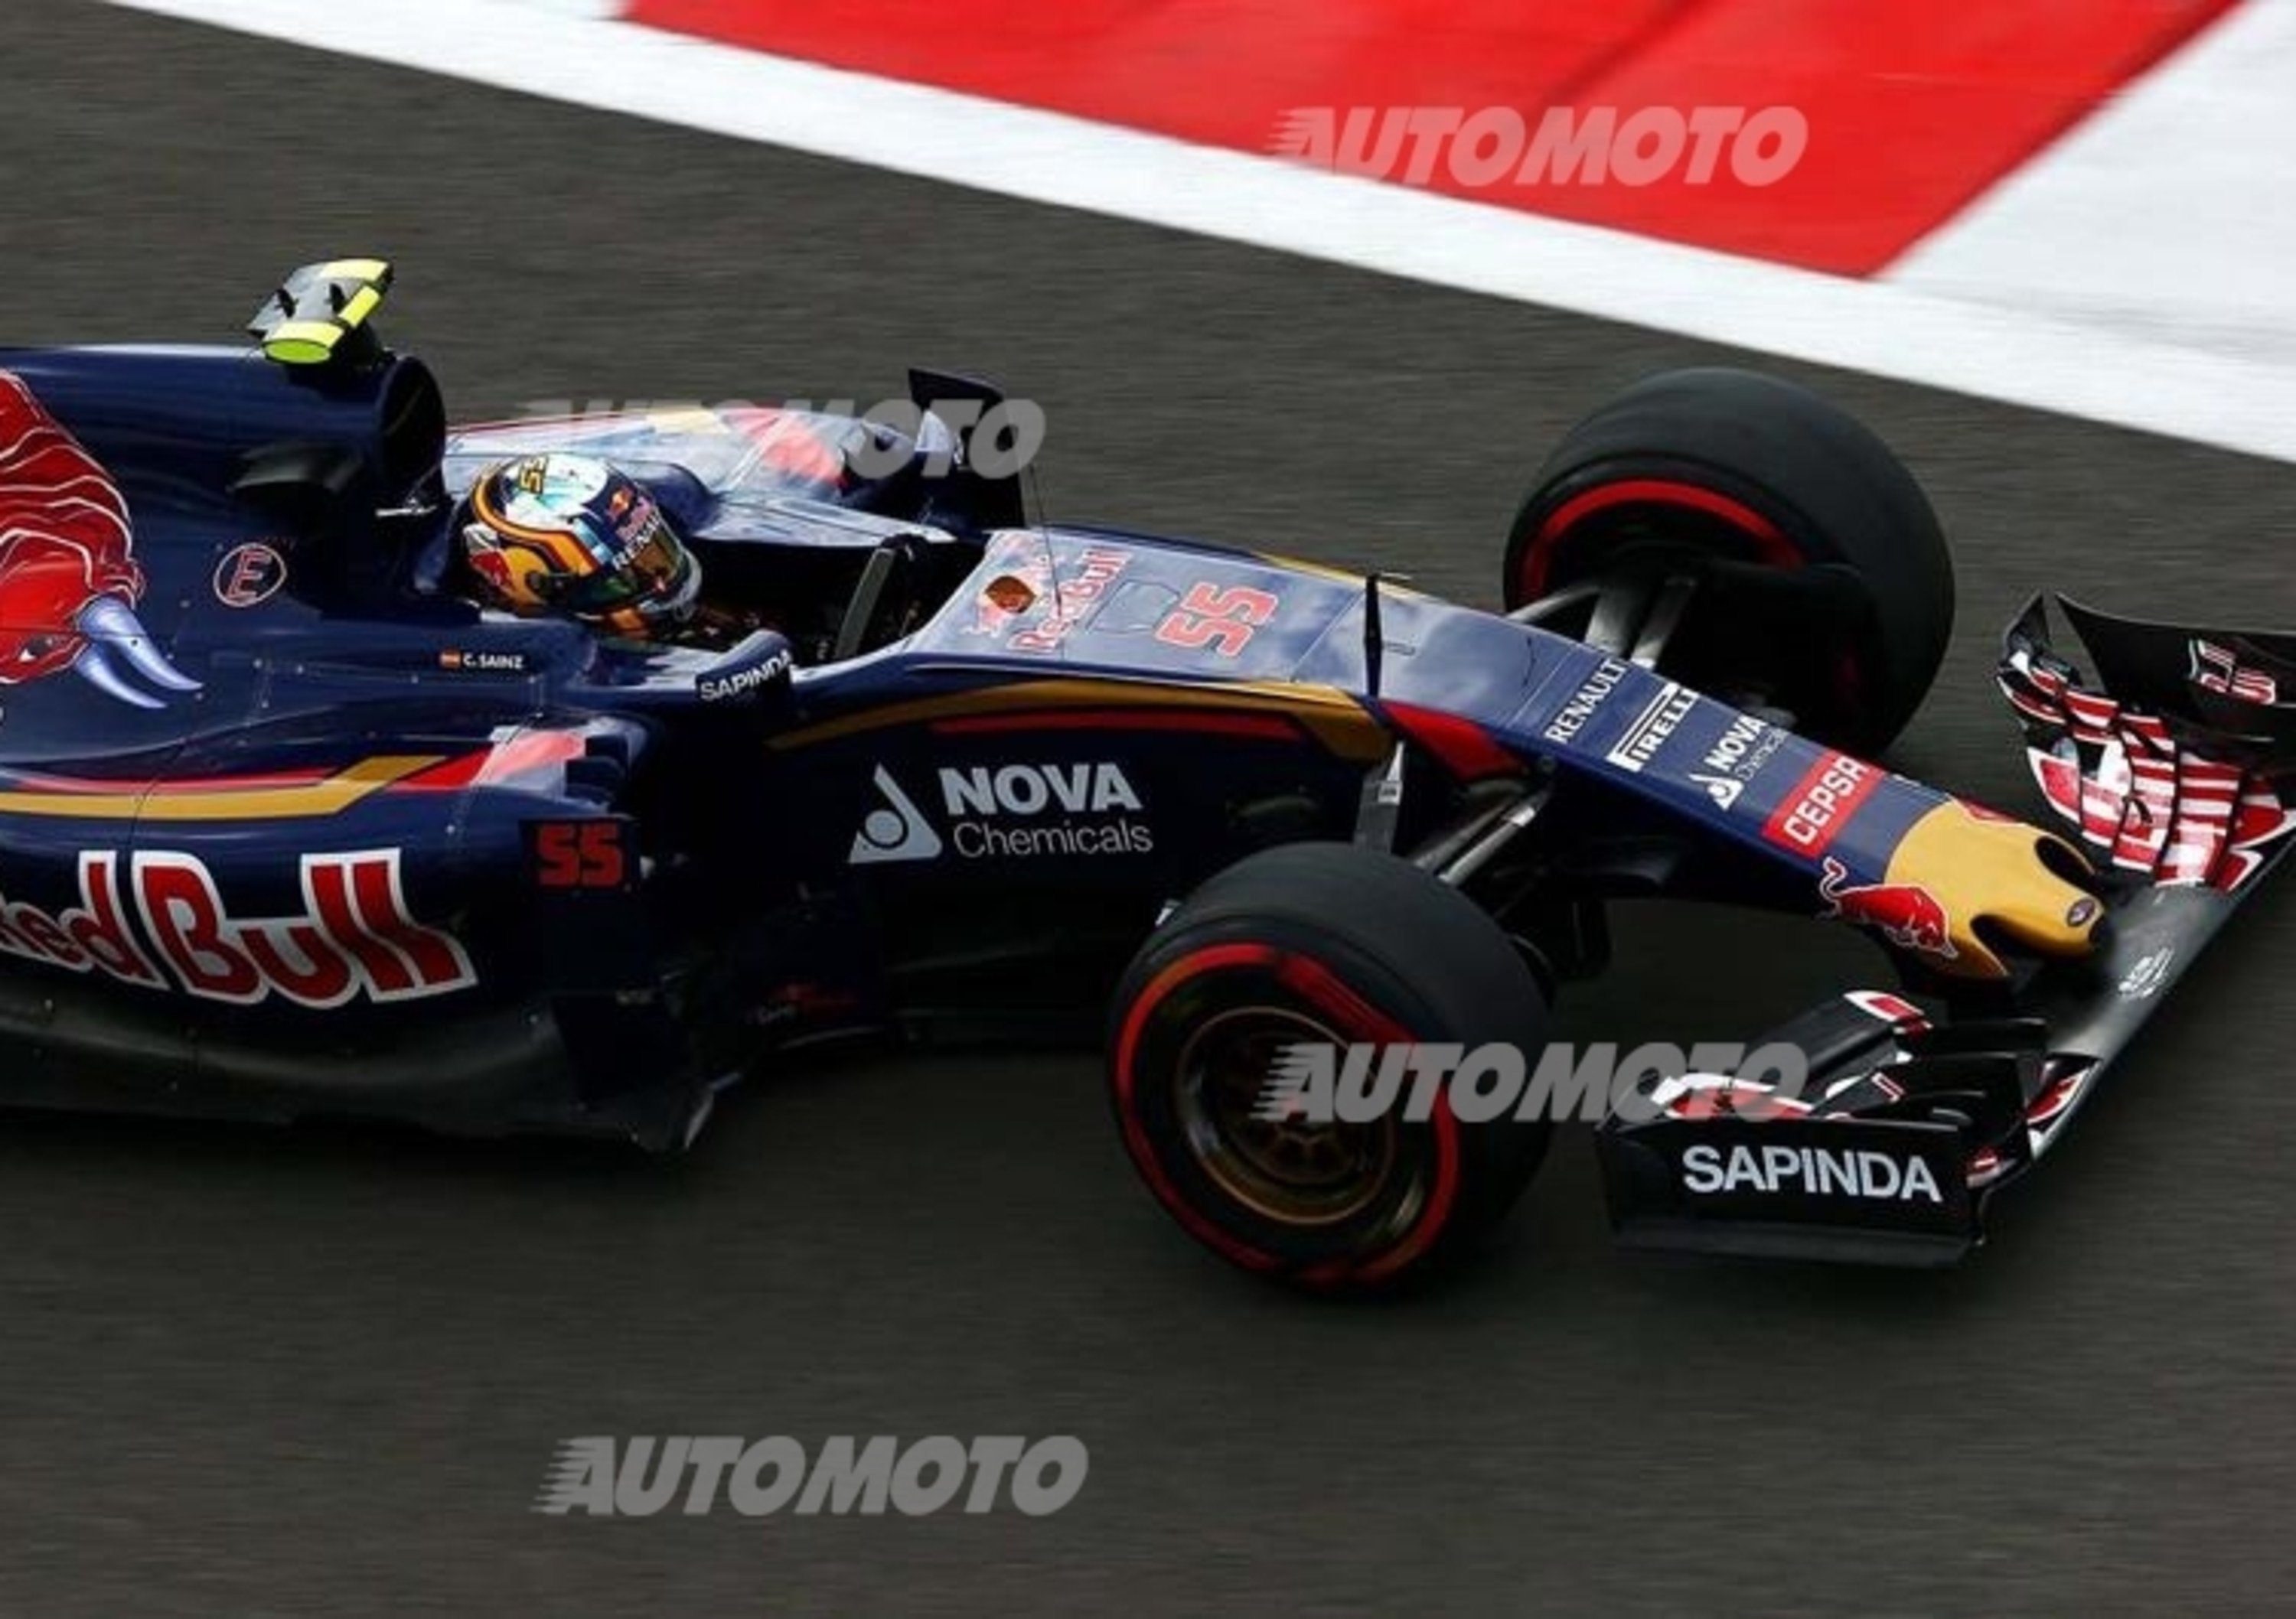 F1, Gp Russia 2015: Sainz parteciper&agrave; alla gara